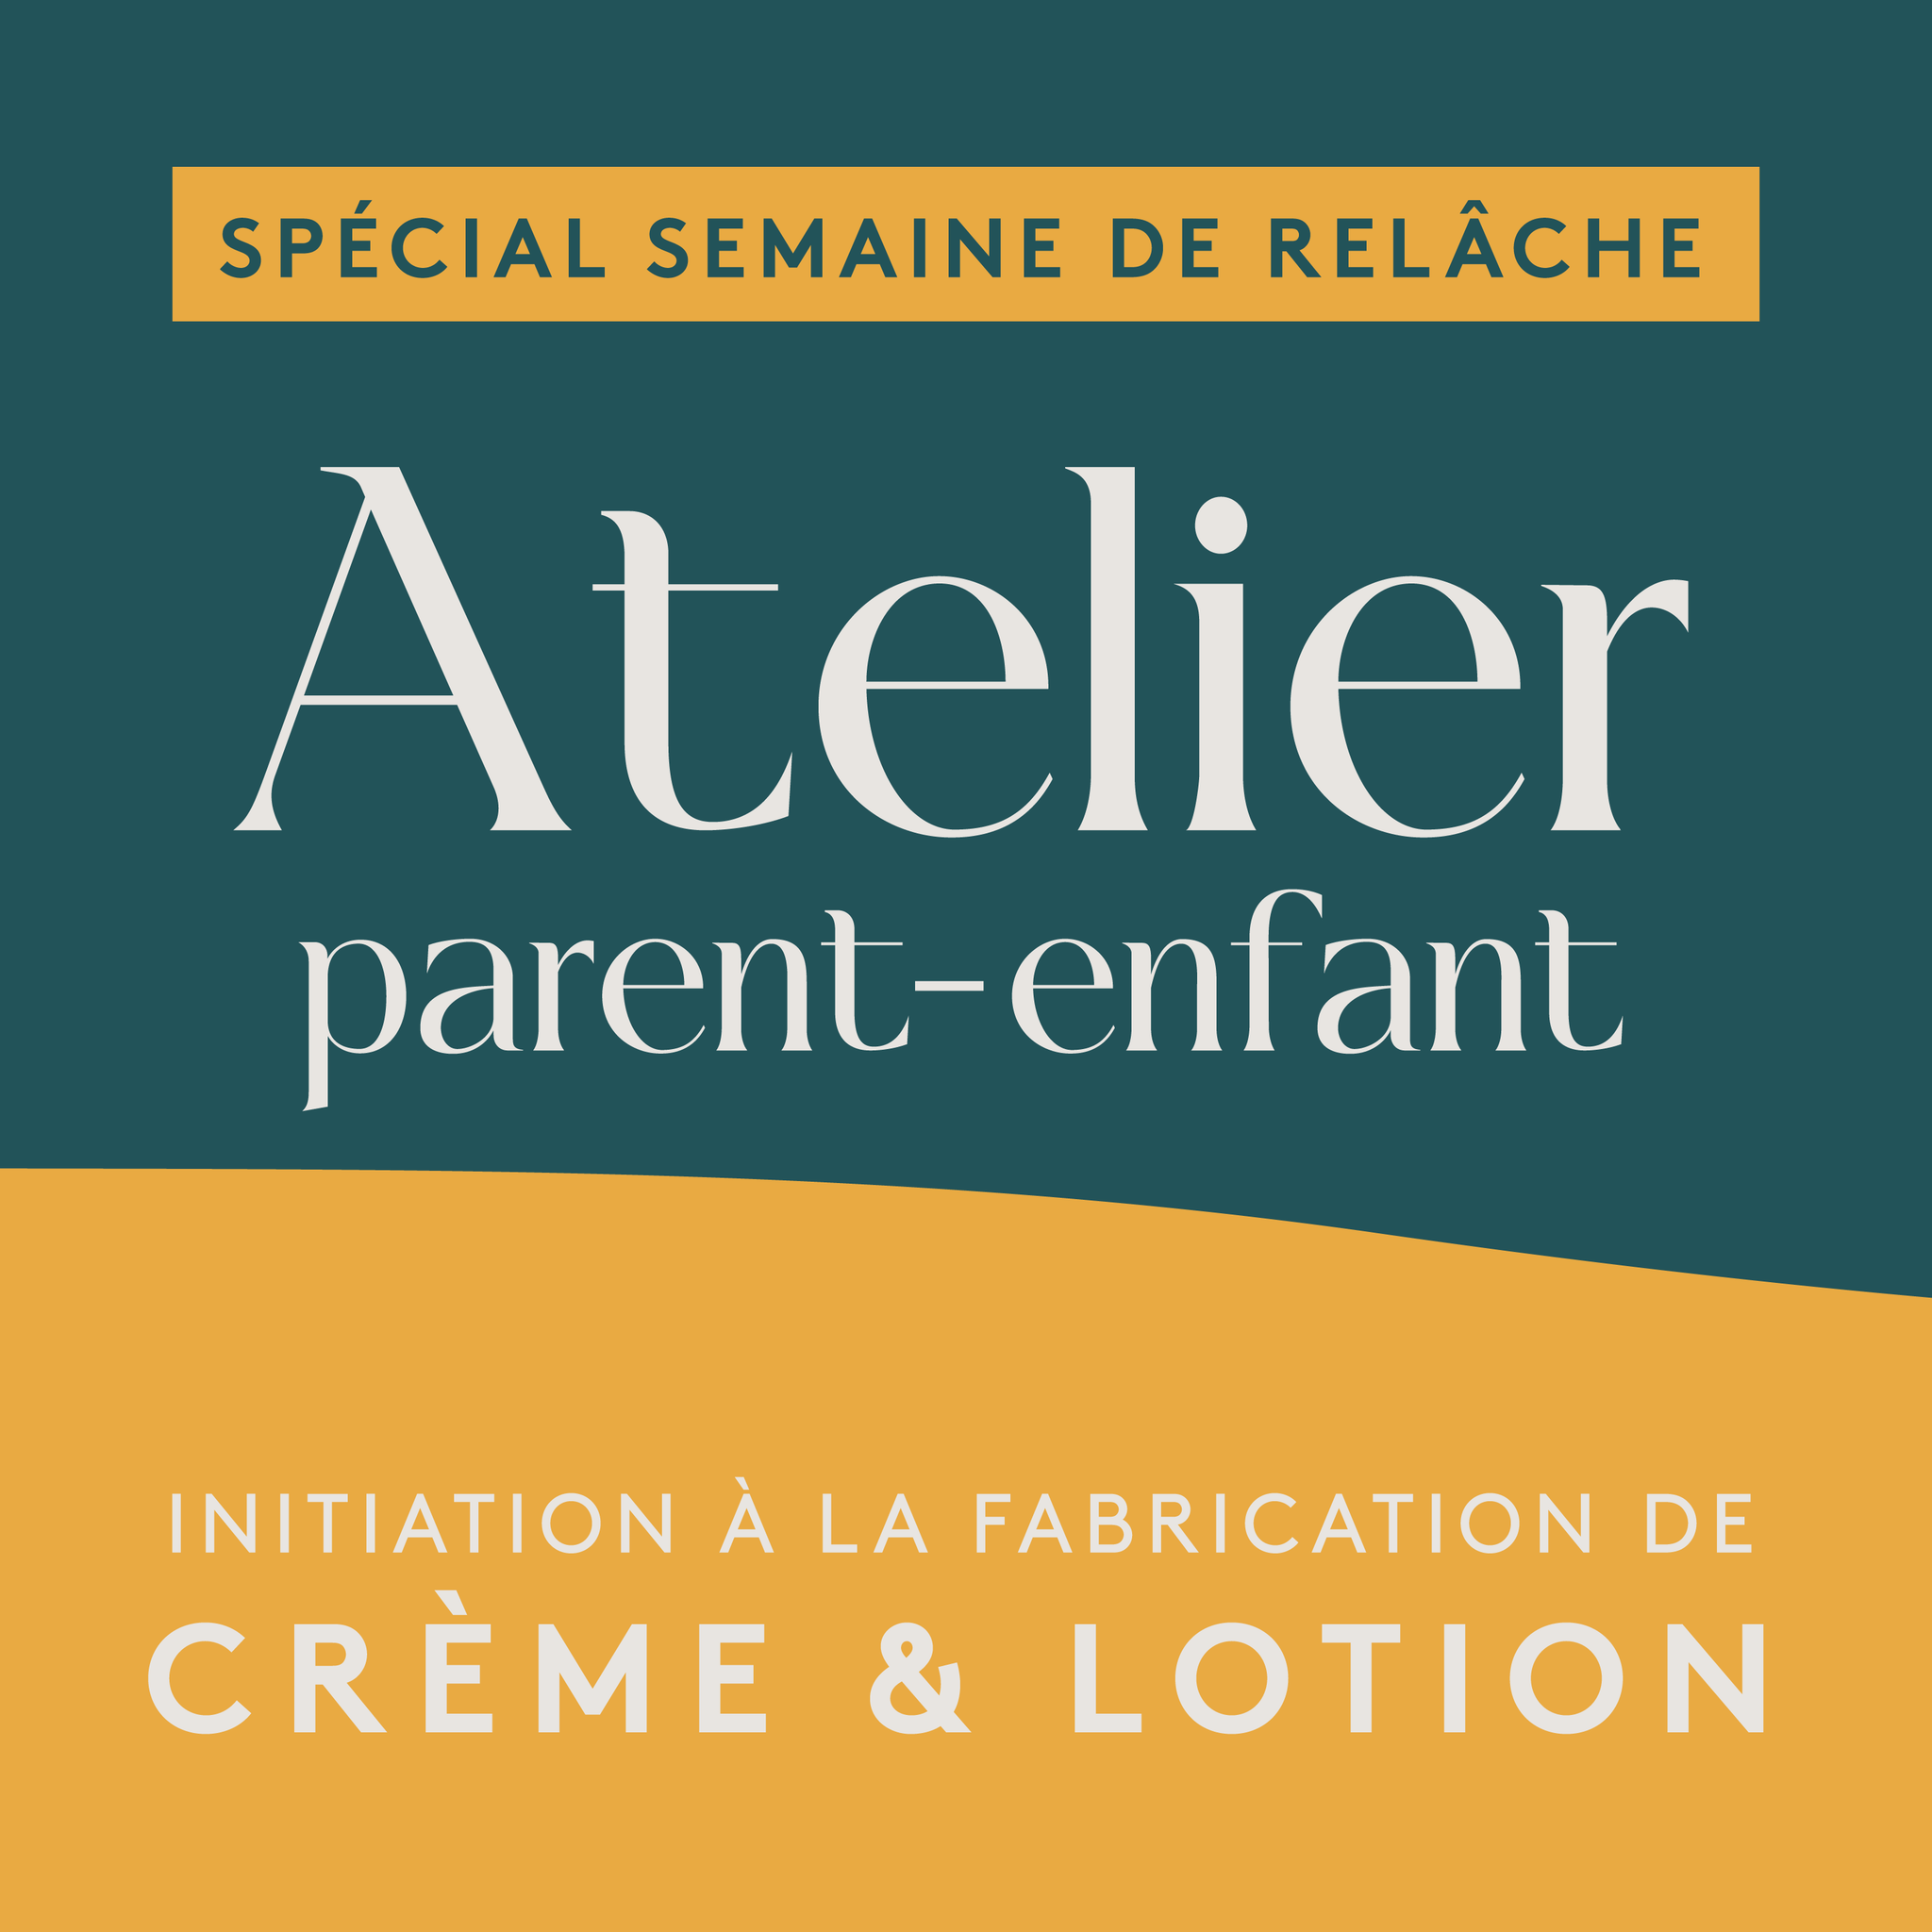 Spécial Semaine de relâche * Atelier parent-enfant * Initiation à la fabrication de crème et lotion